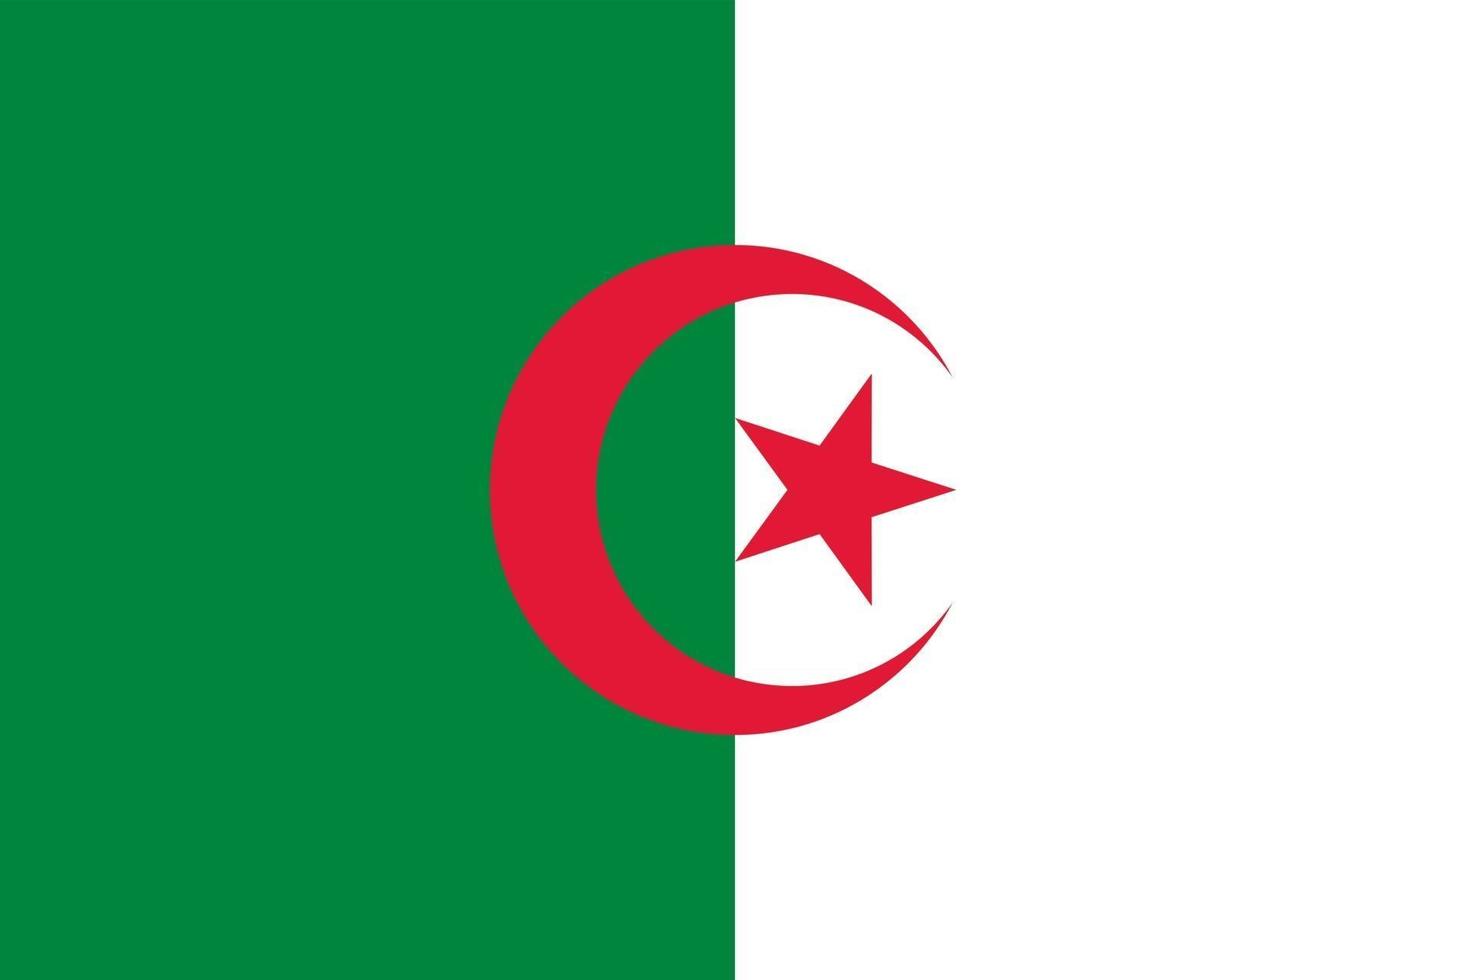 Algeria officially flag vector